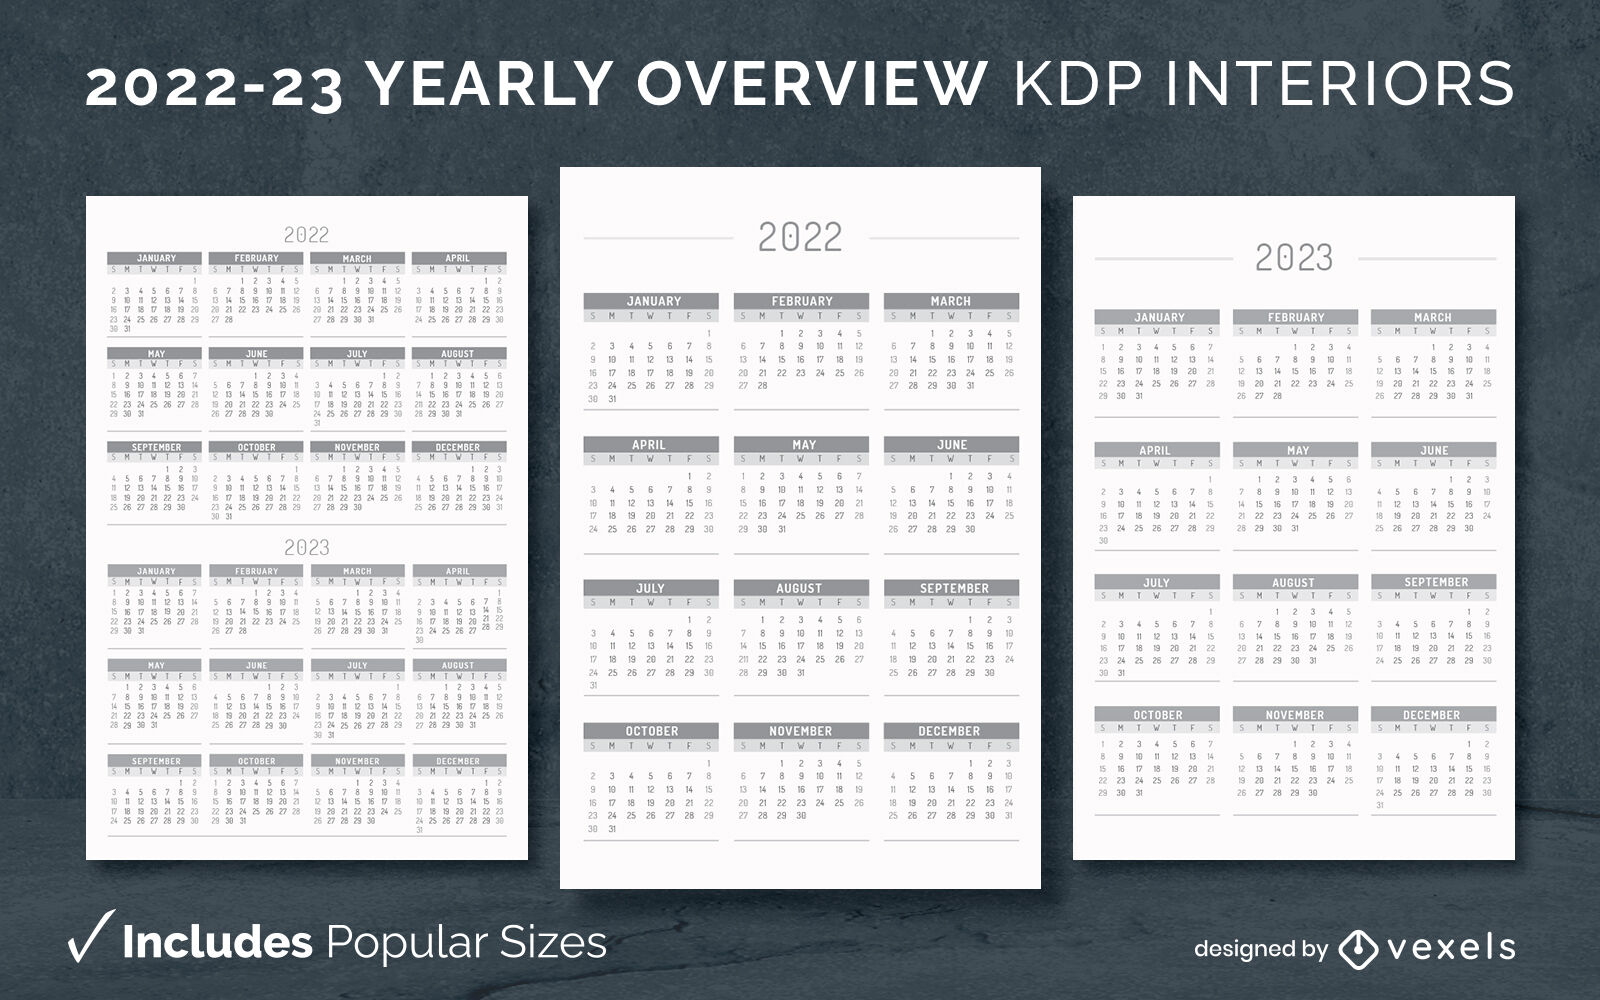 Visão geral anual do modelo de interior do KDP 2022-23